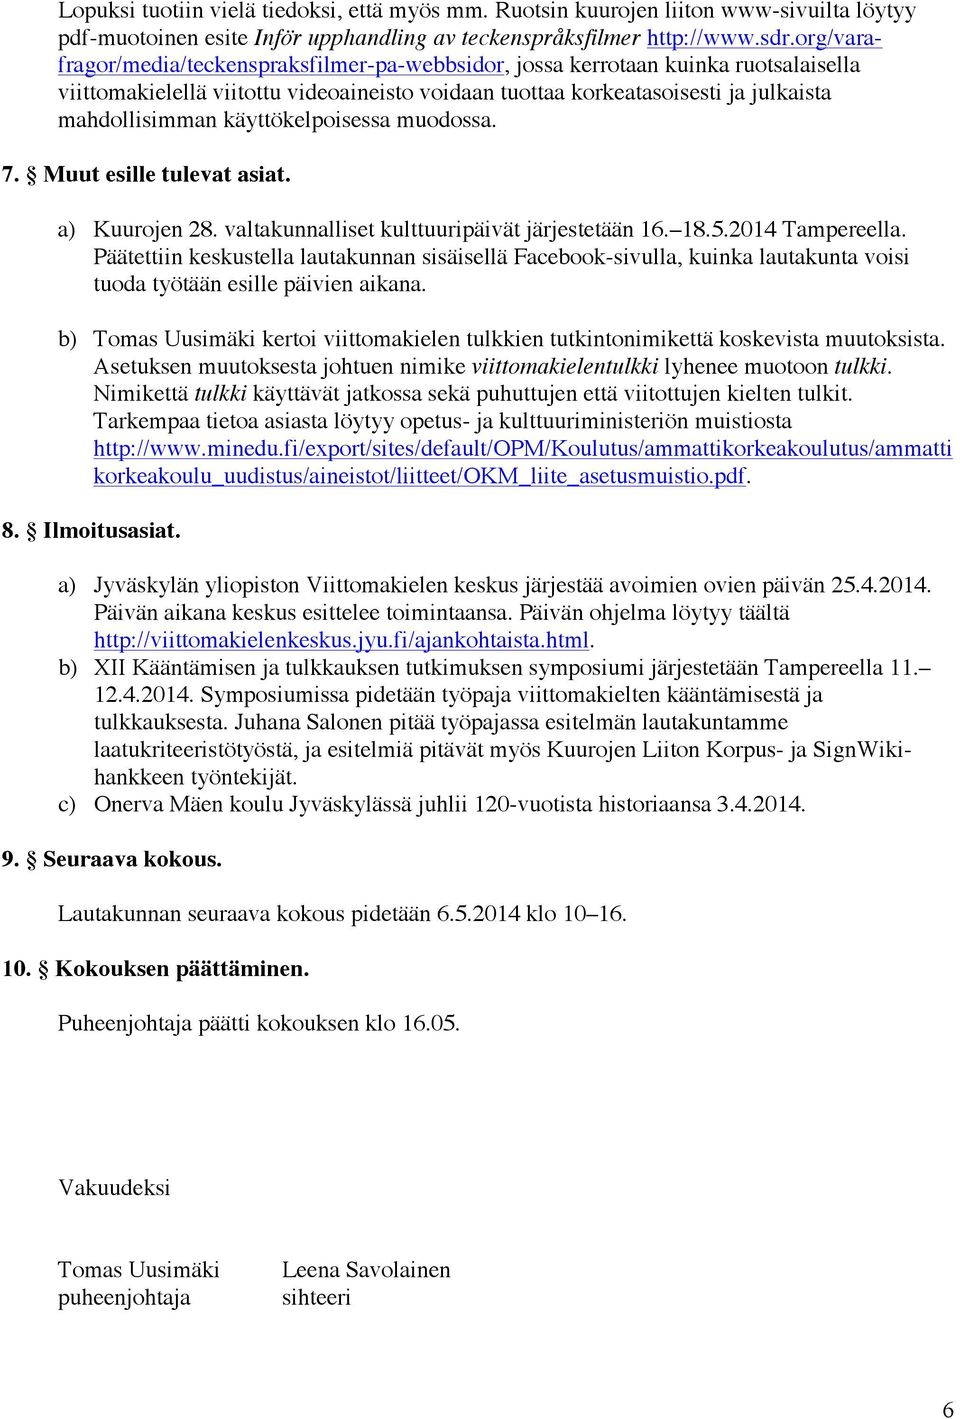 käyttökelpoisessa muodossa. 7. Muut esille tulevat asiat. a) Kuurojen 28. valtakunnalliset kulttuuripäivät järjestetään 16. 18.5.2014 Tampereella.